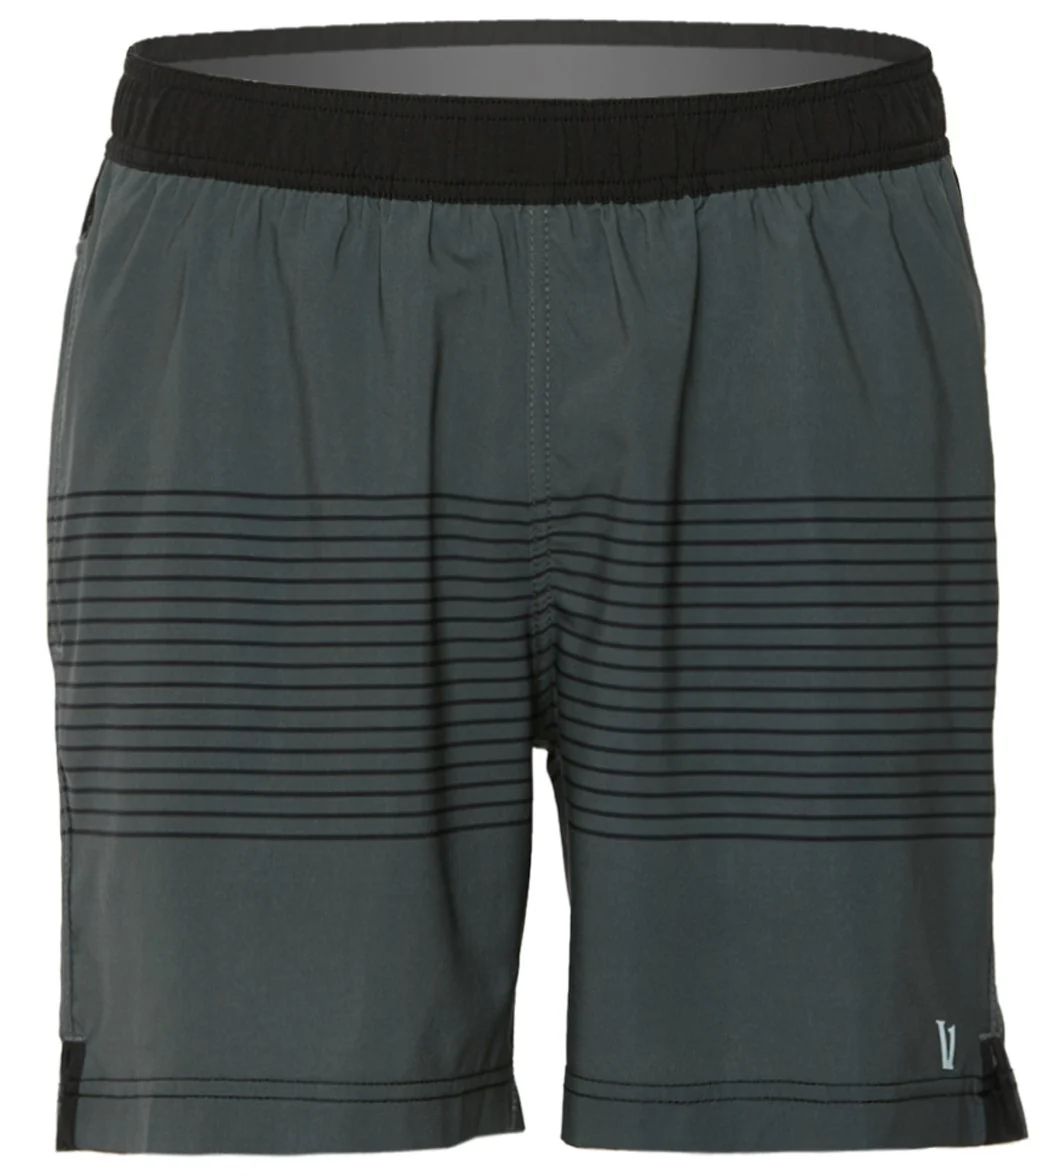 Vuori Men's Rush Yoga Shorts - Charcoal Black Stripe Block Large Polyester/Elastane Moisture Wicking | YogaOutlet.com